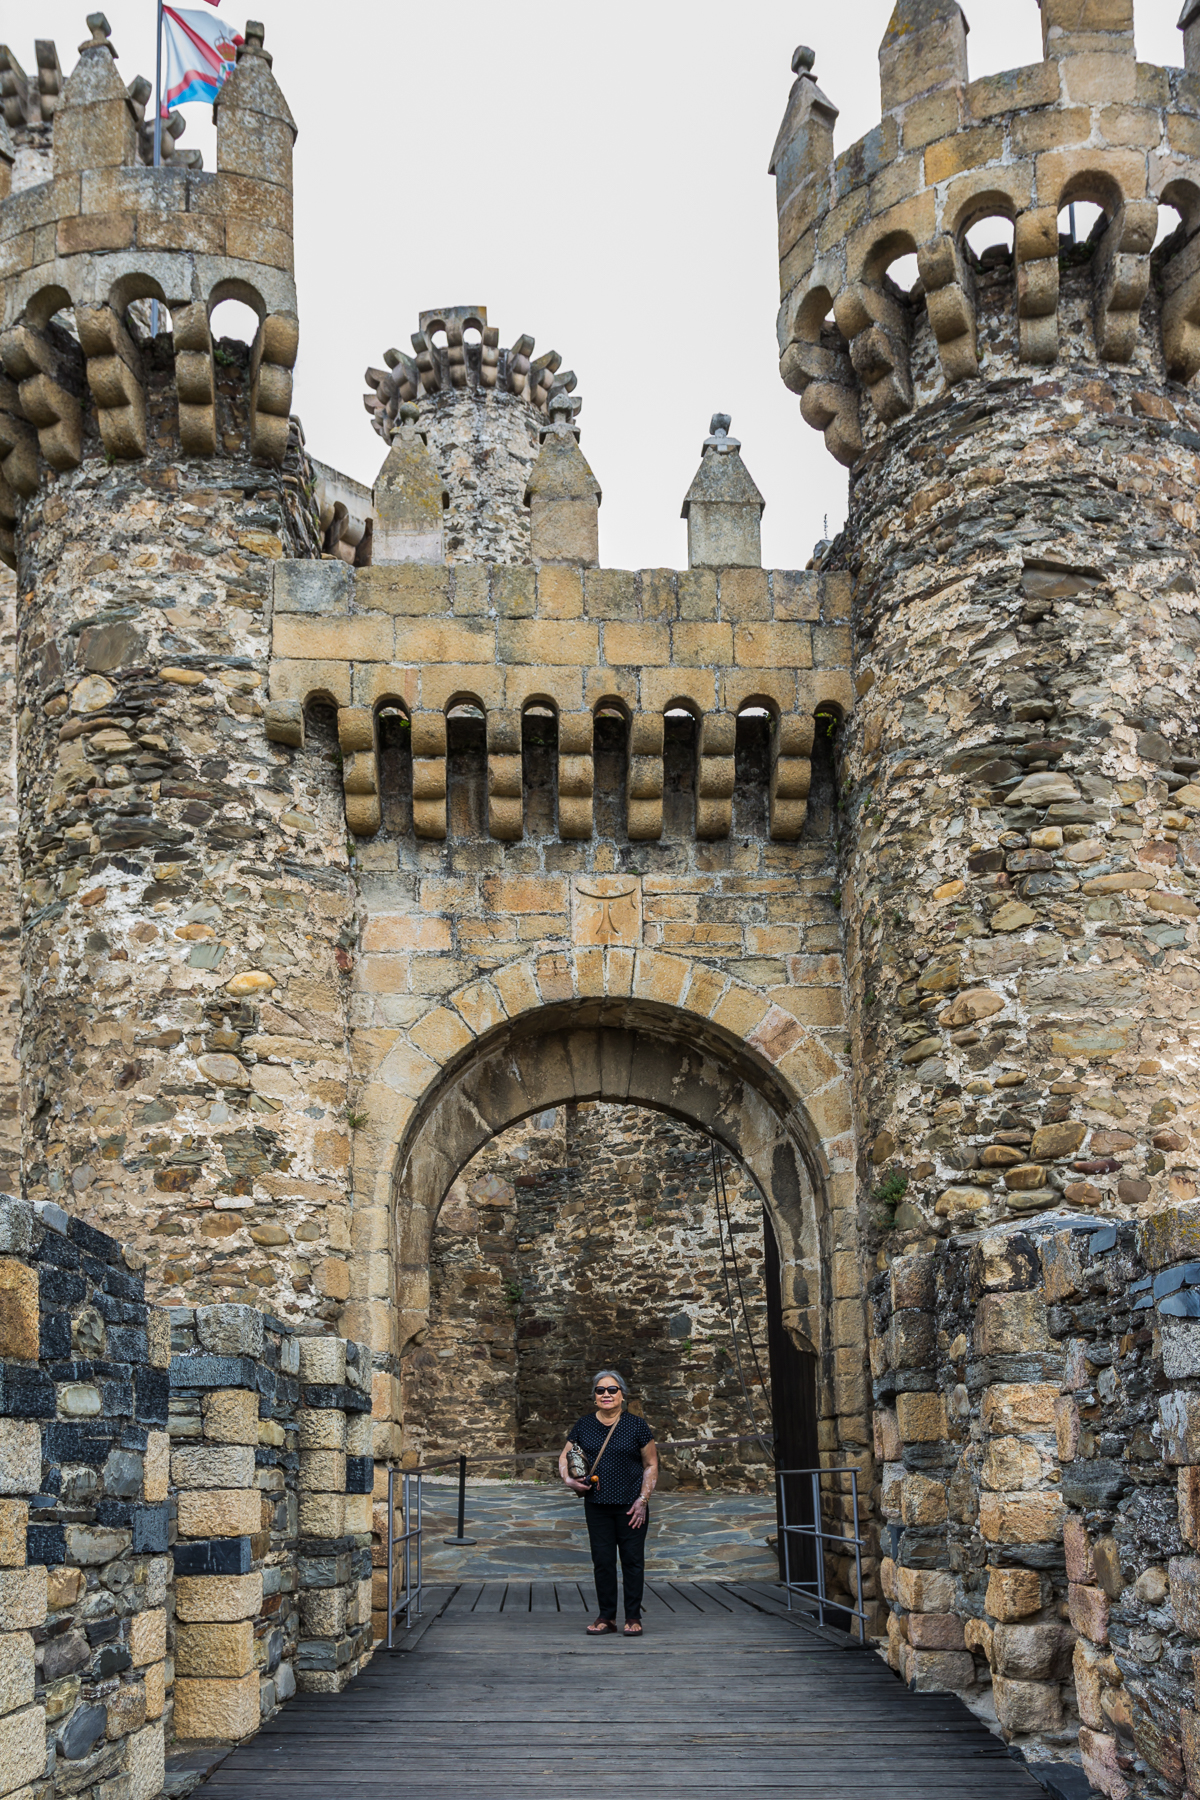 Templar Castle Of Ponferrada Wallpapers